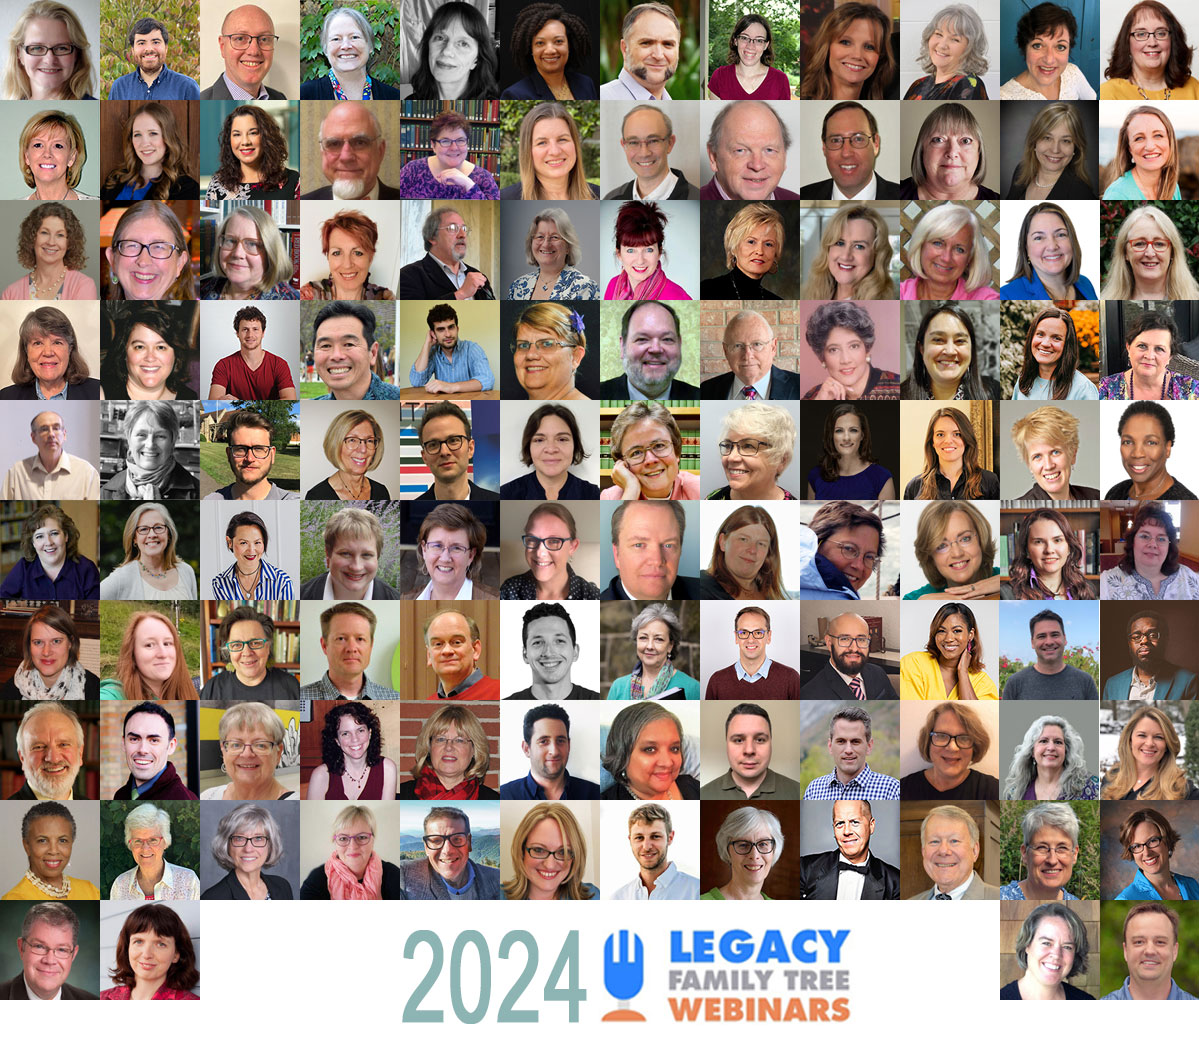 2024 Legacy Family Tree Webinars: NEW Classes on DNA, Genealogy and Family History from Legacy Family Tree Webinars in 2024